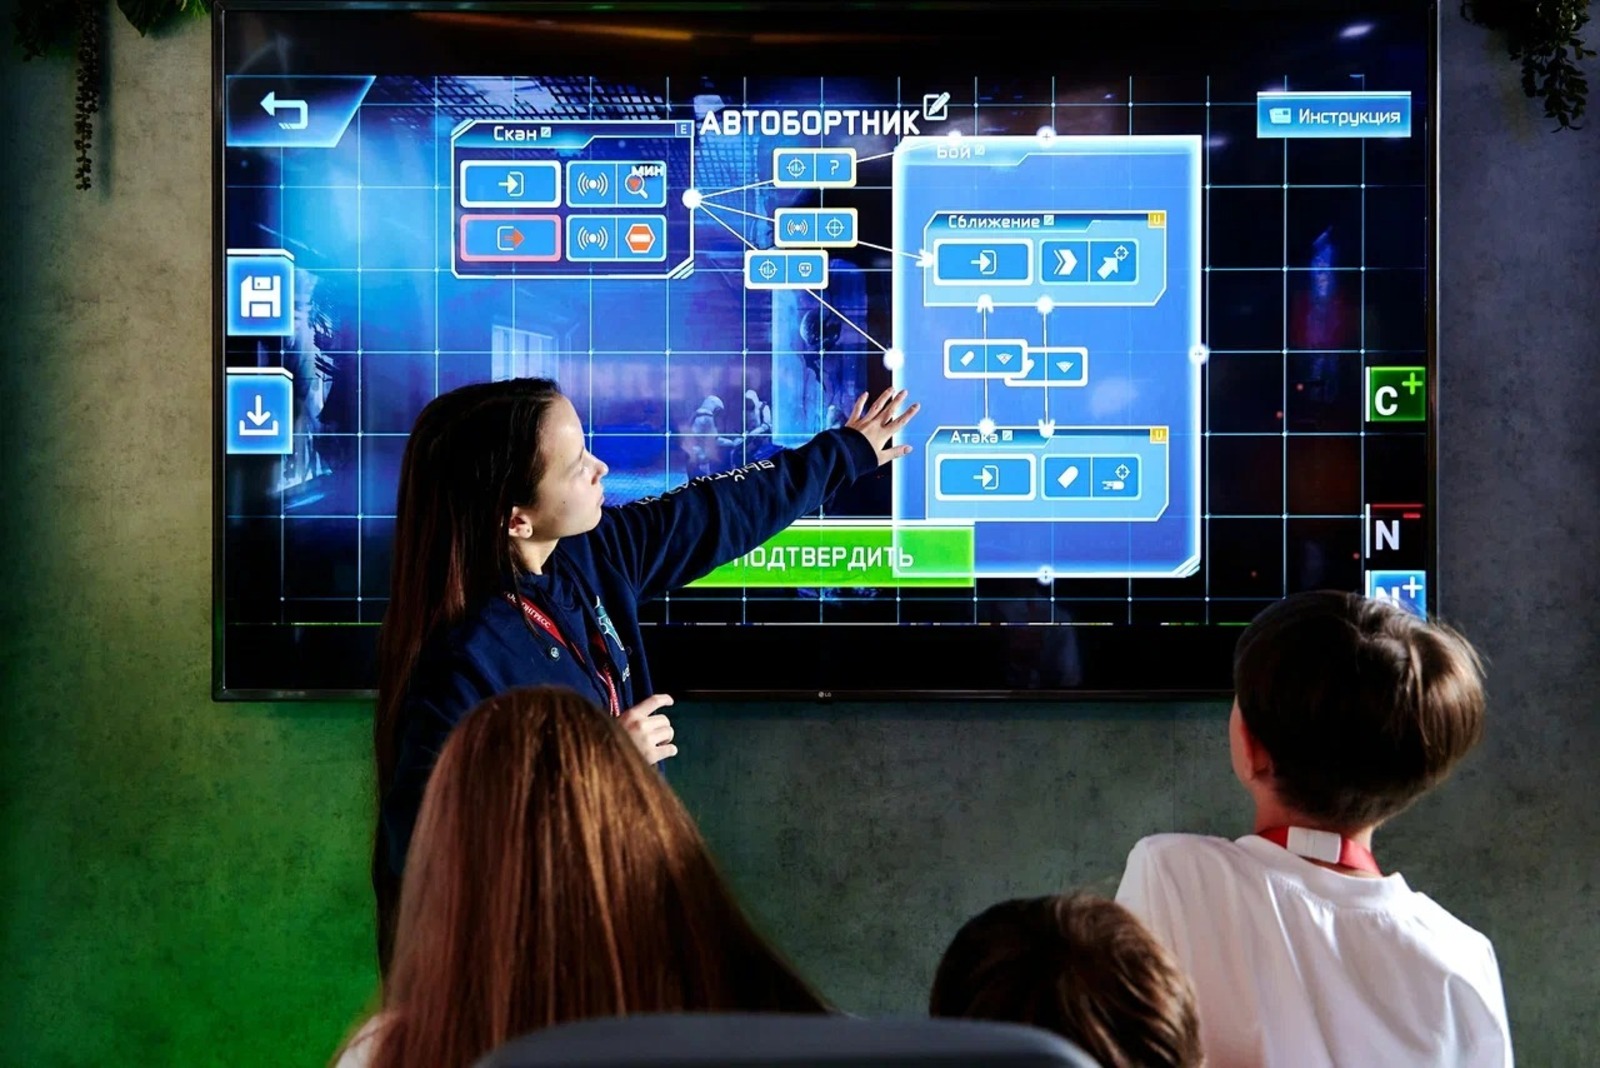 Мастерская киберфизических инноваций откроется в Межвузовском студенческом кампусе мирового уровня в Уфе